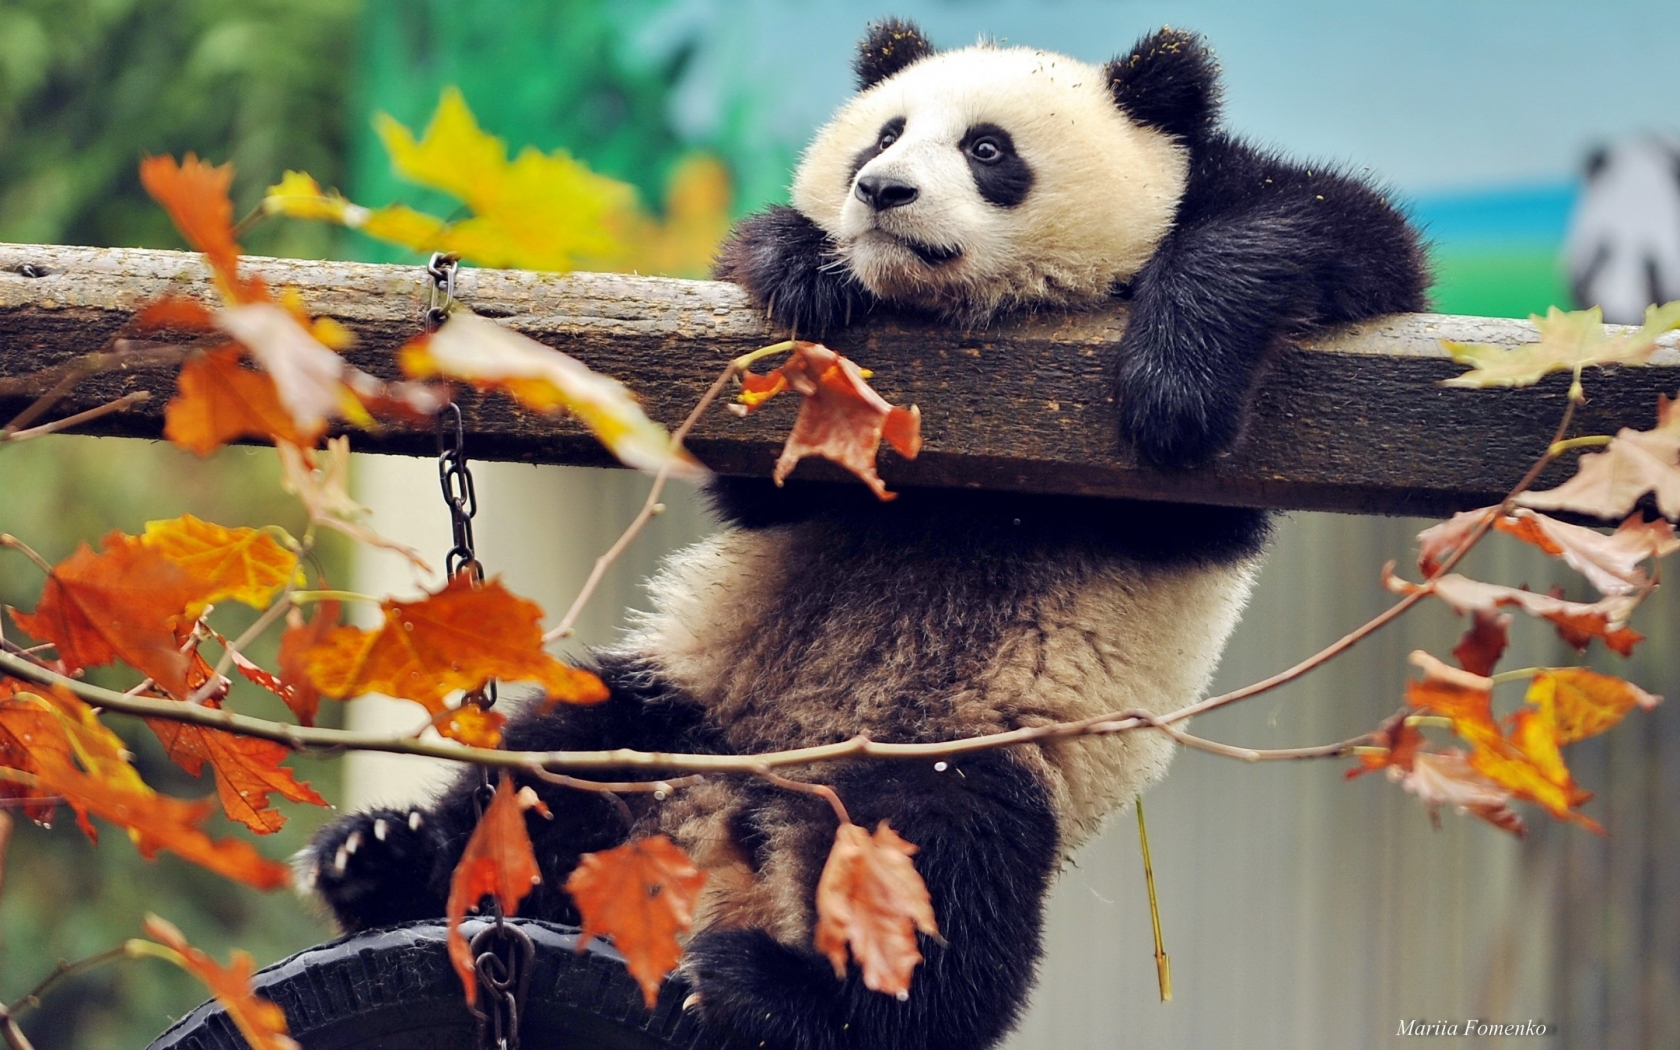 Cute Panda Climbing for 1680 x 1050 widescreen resolution